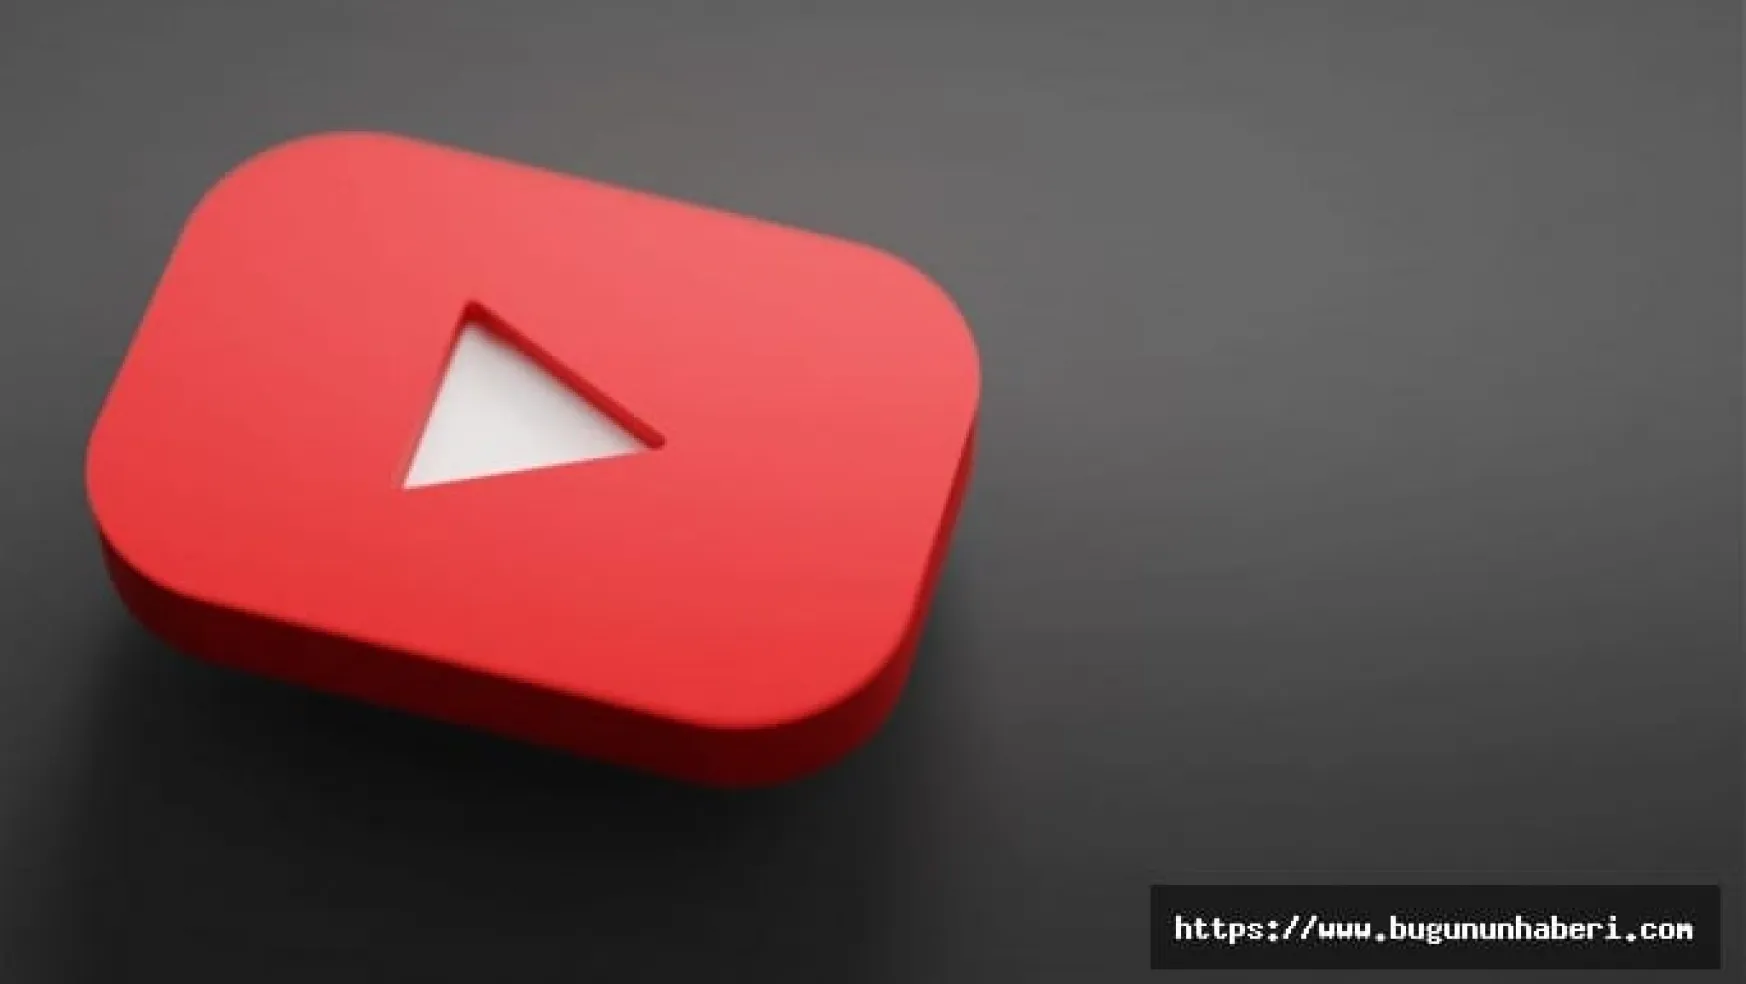 YouTube Kullanıcıları, Reklam Engelleme Yazılımlarını Kaldırmaya Başlıyor: YouTube'un Reklam Engelleme Politikaları ve Kullanıcı Tepkileri